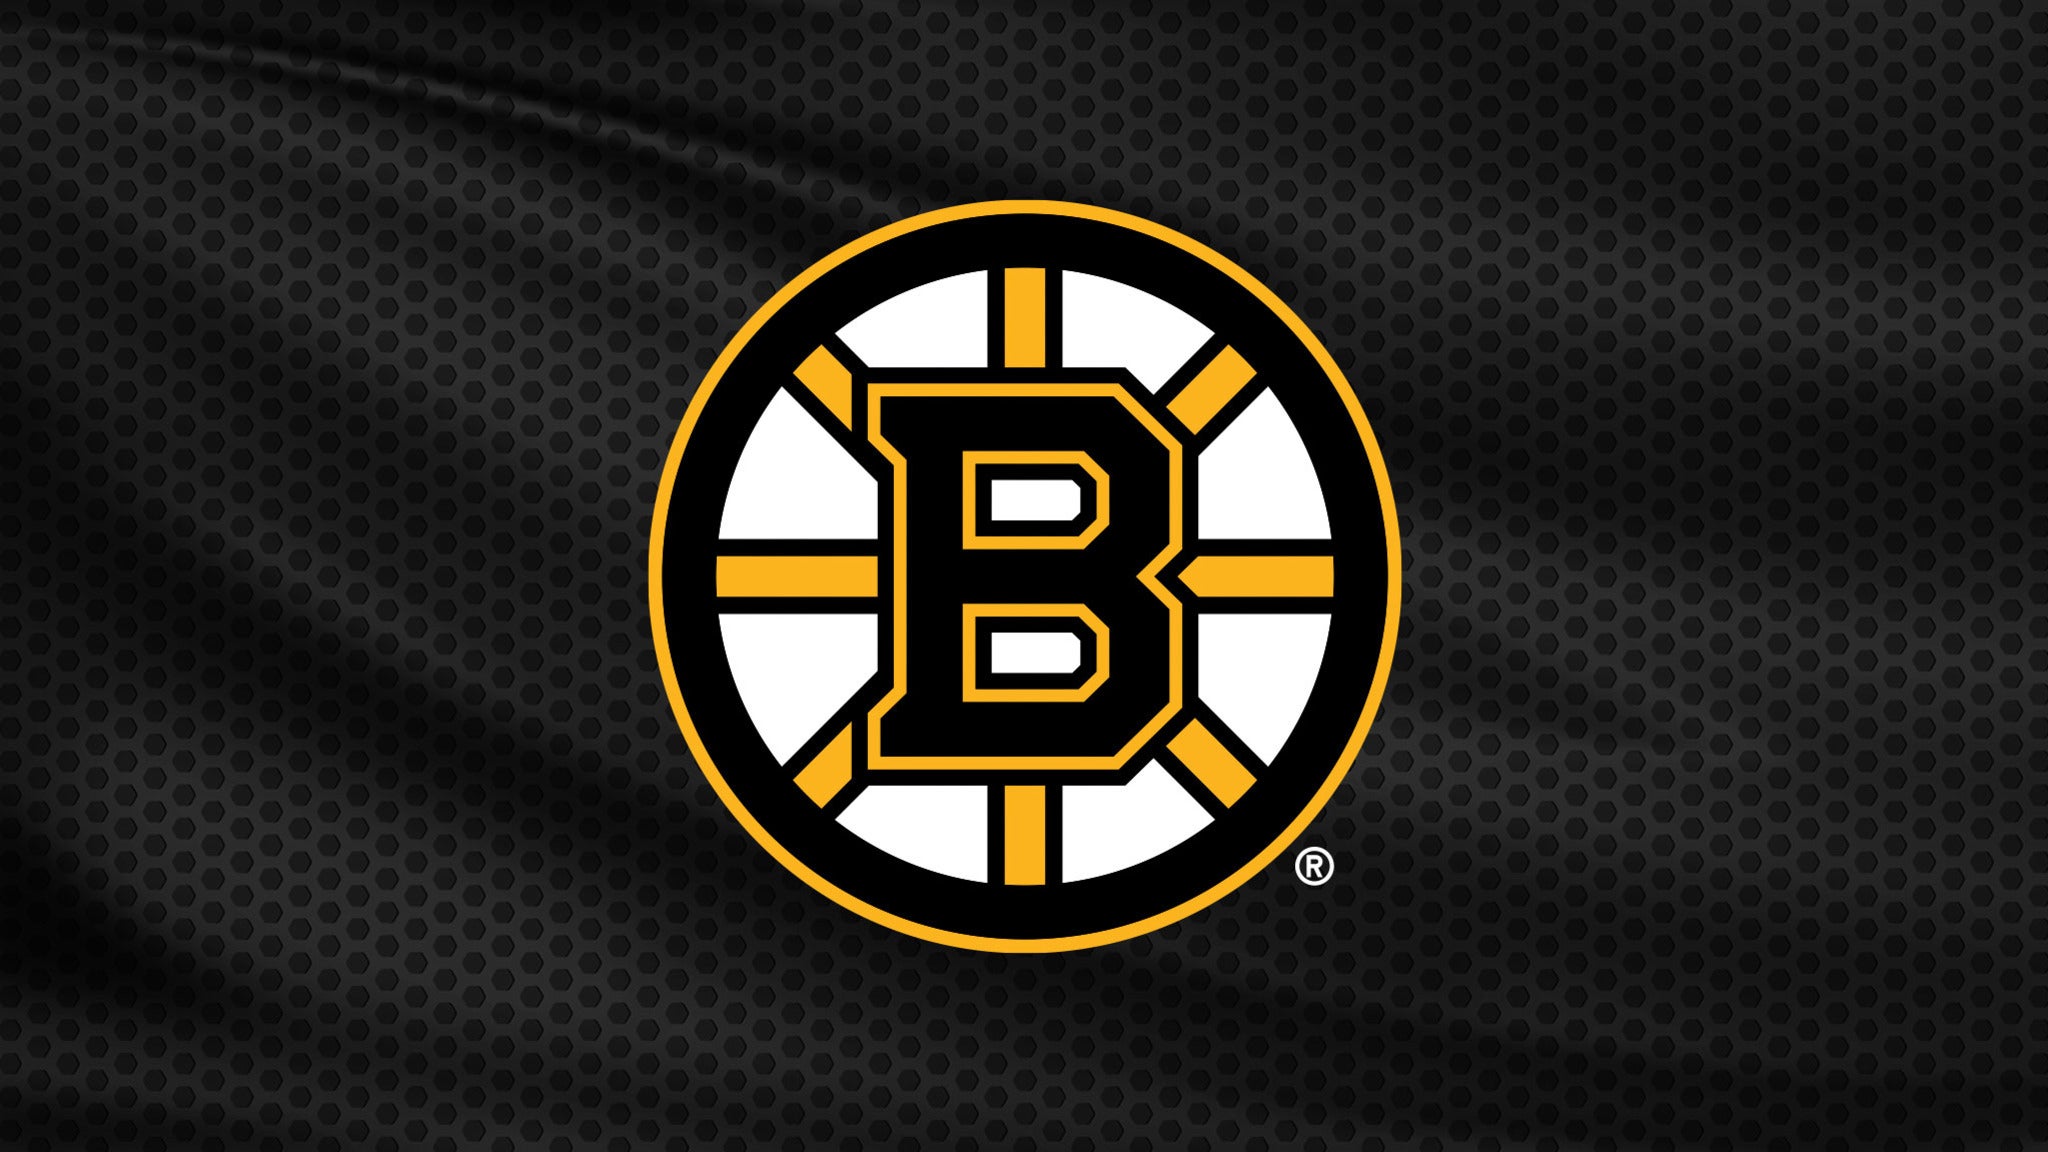 Boston Bruins vs. Anaheim Ducks